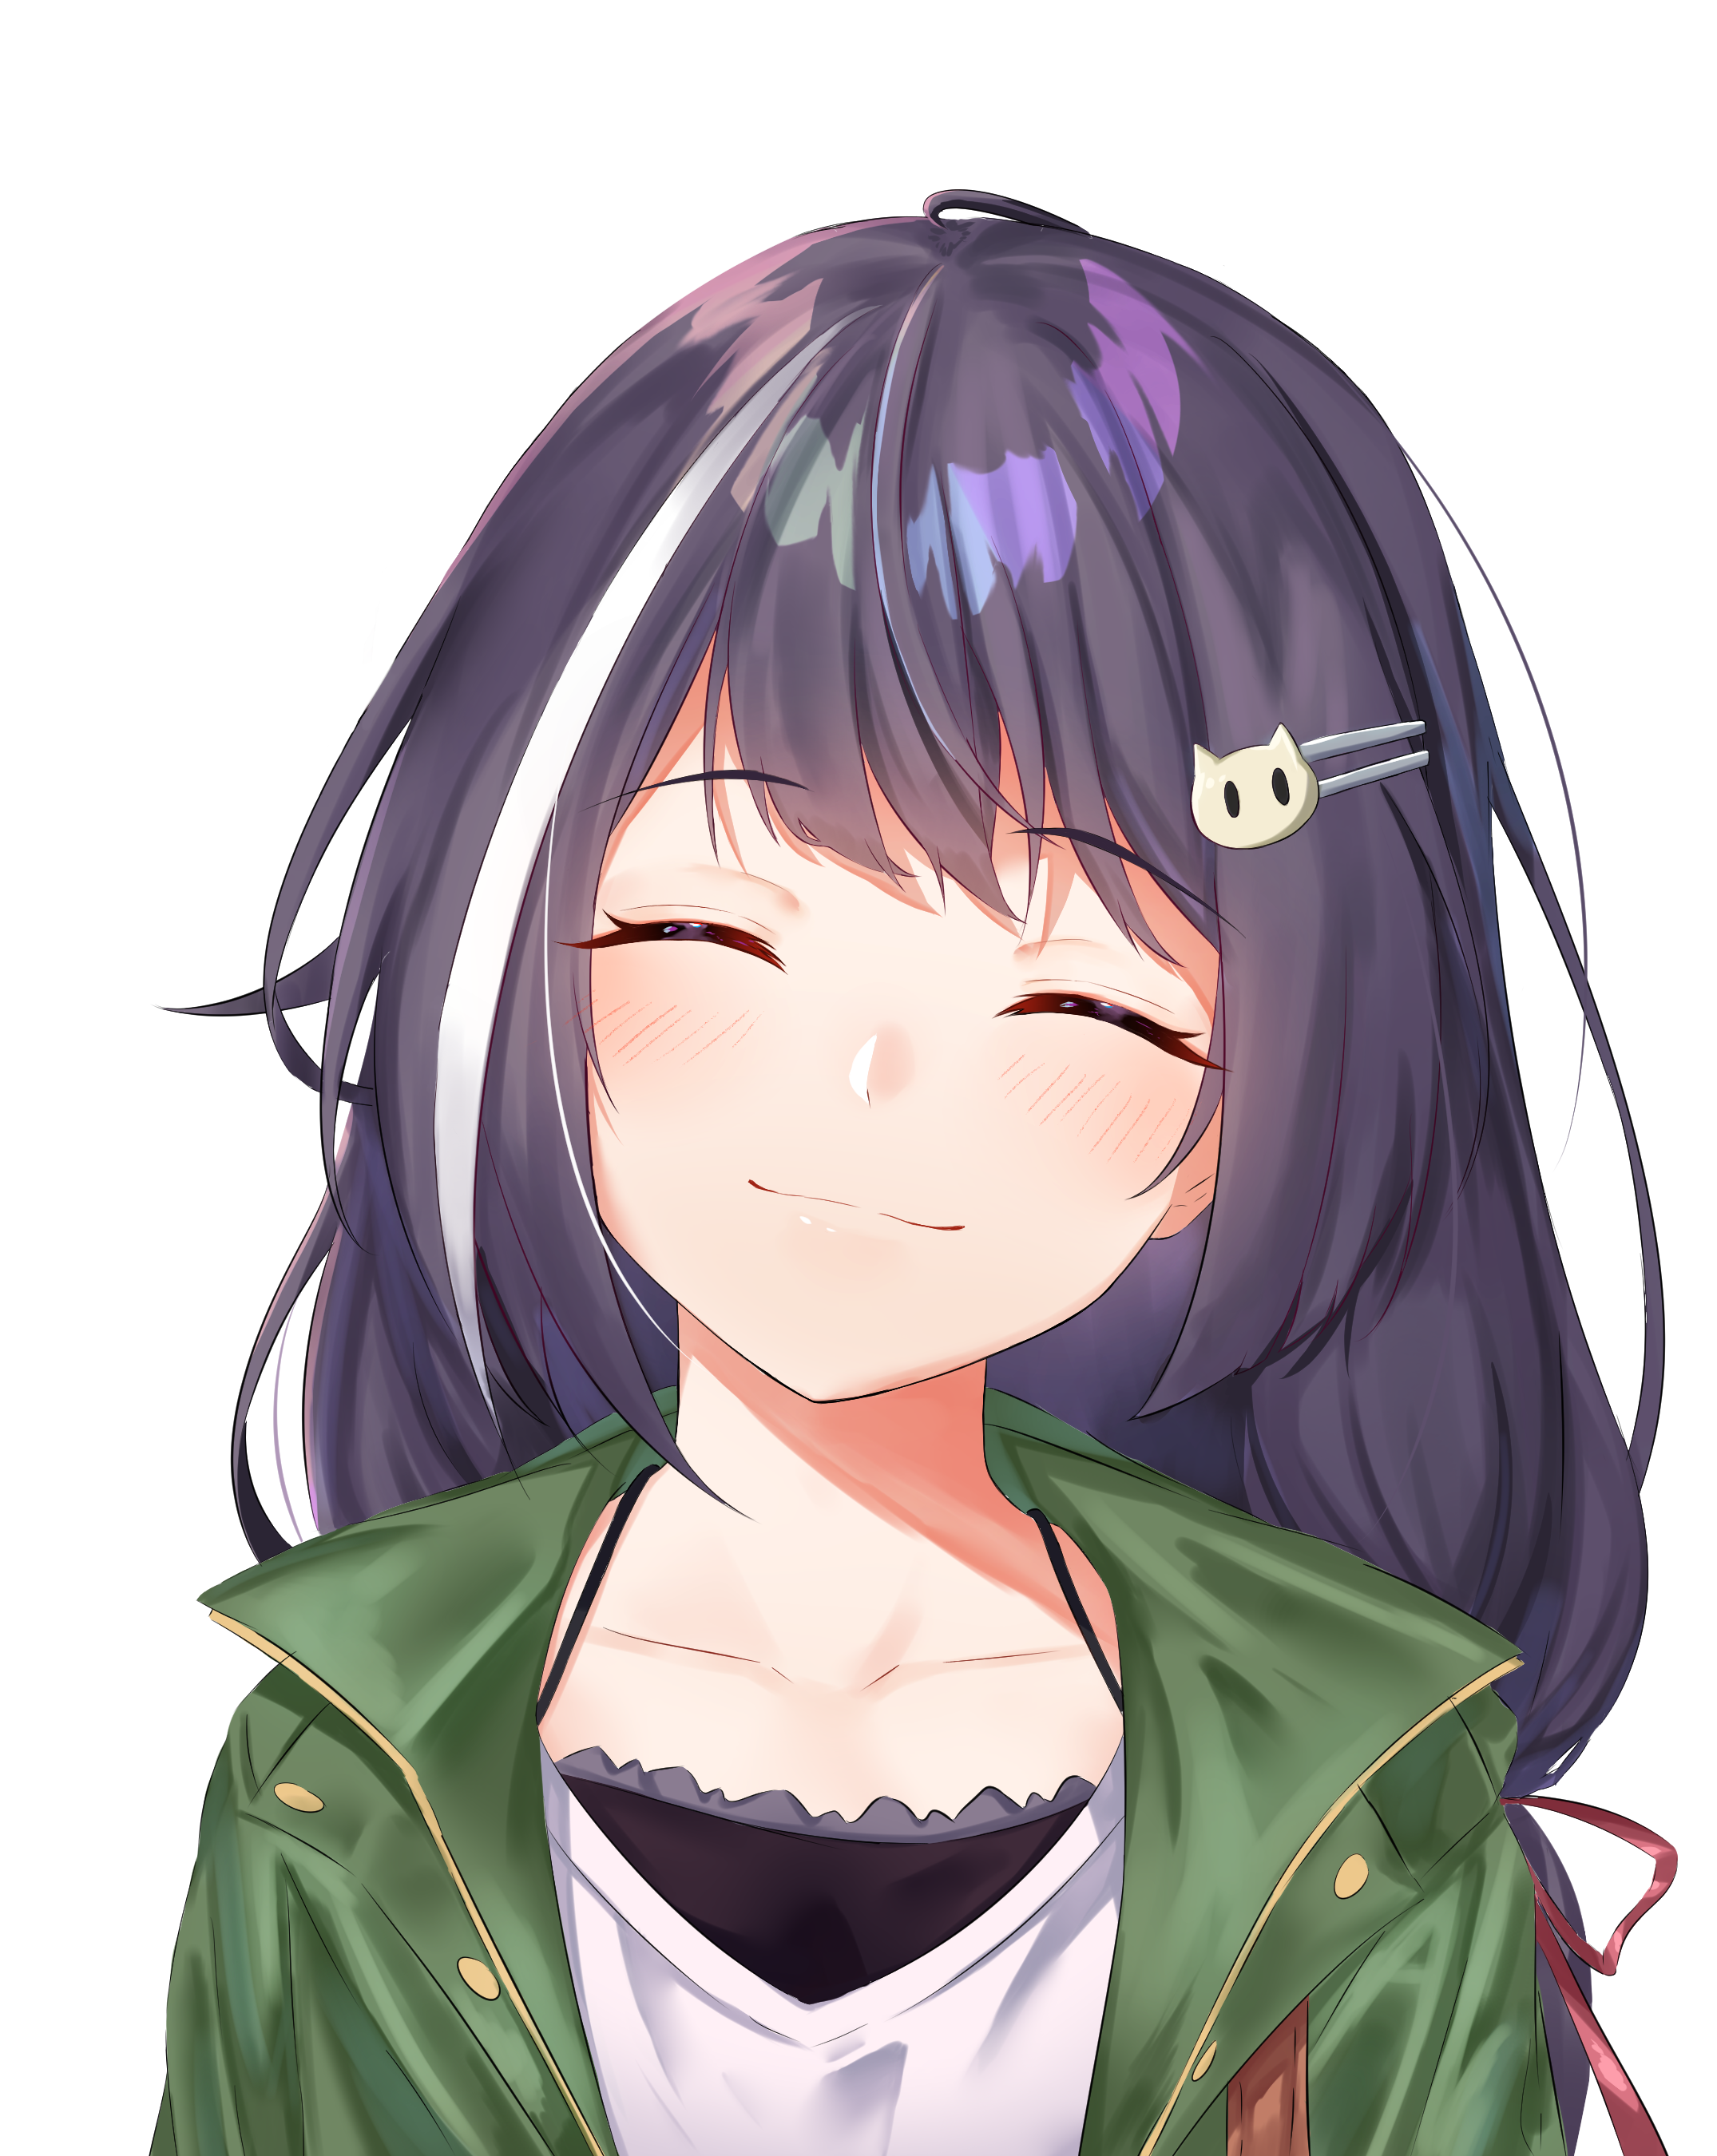 Cute Anime Girl Smiling gambar ke 12